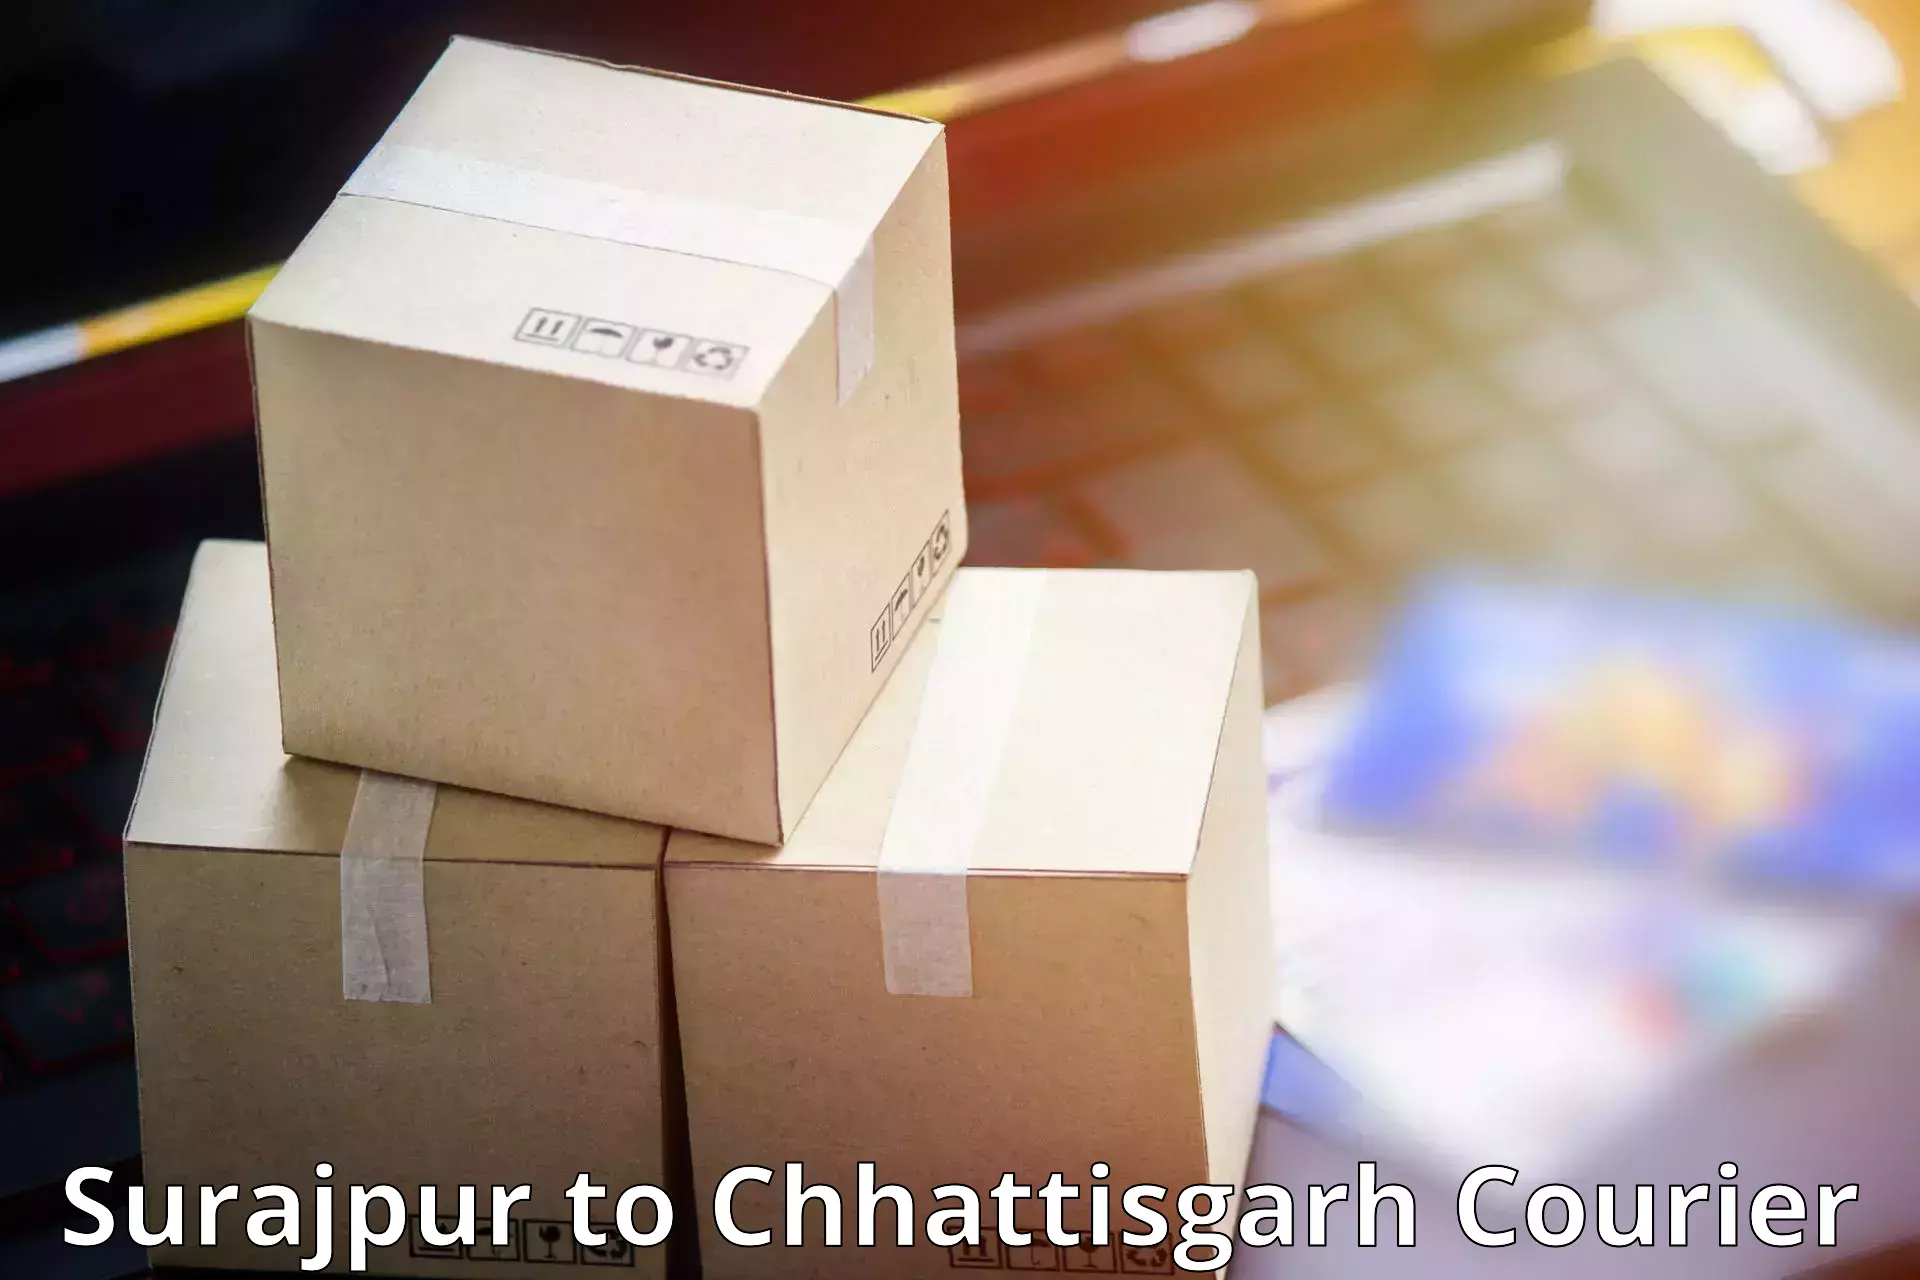 Express package handling Surajpur to Bijapur Chhattisgarh